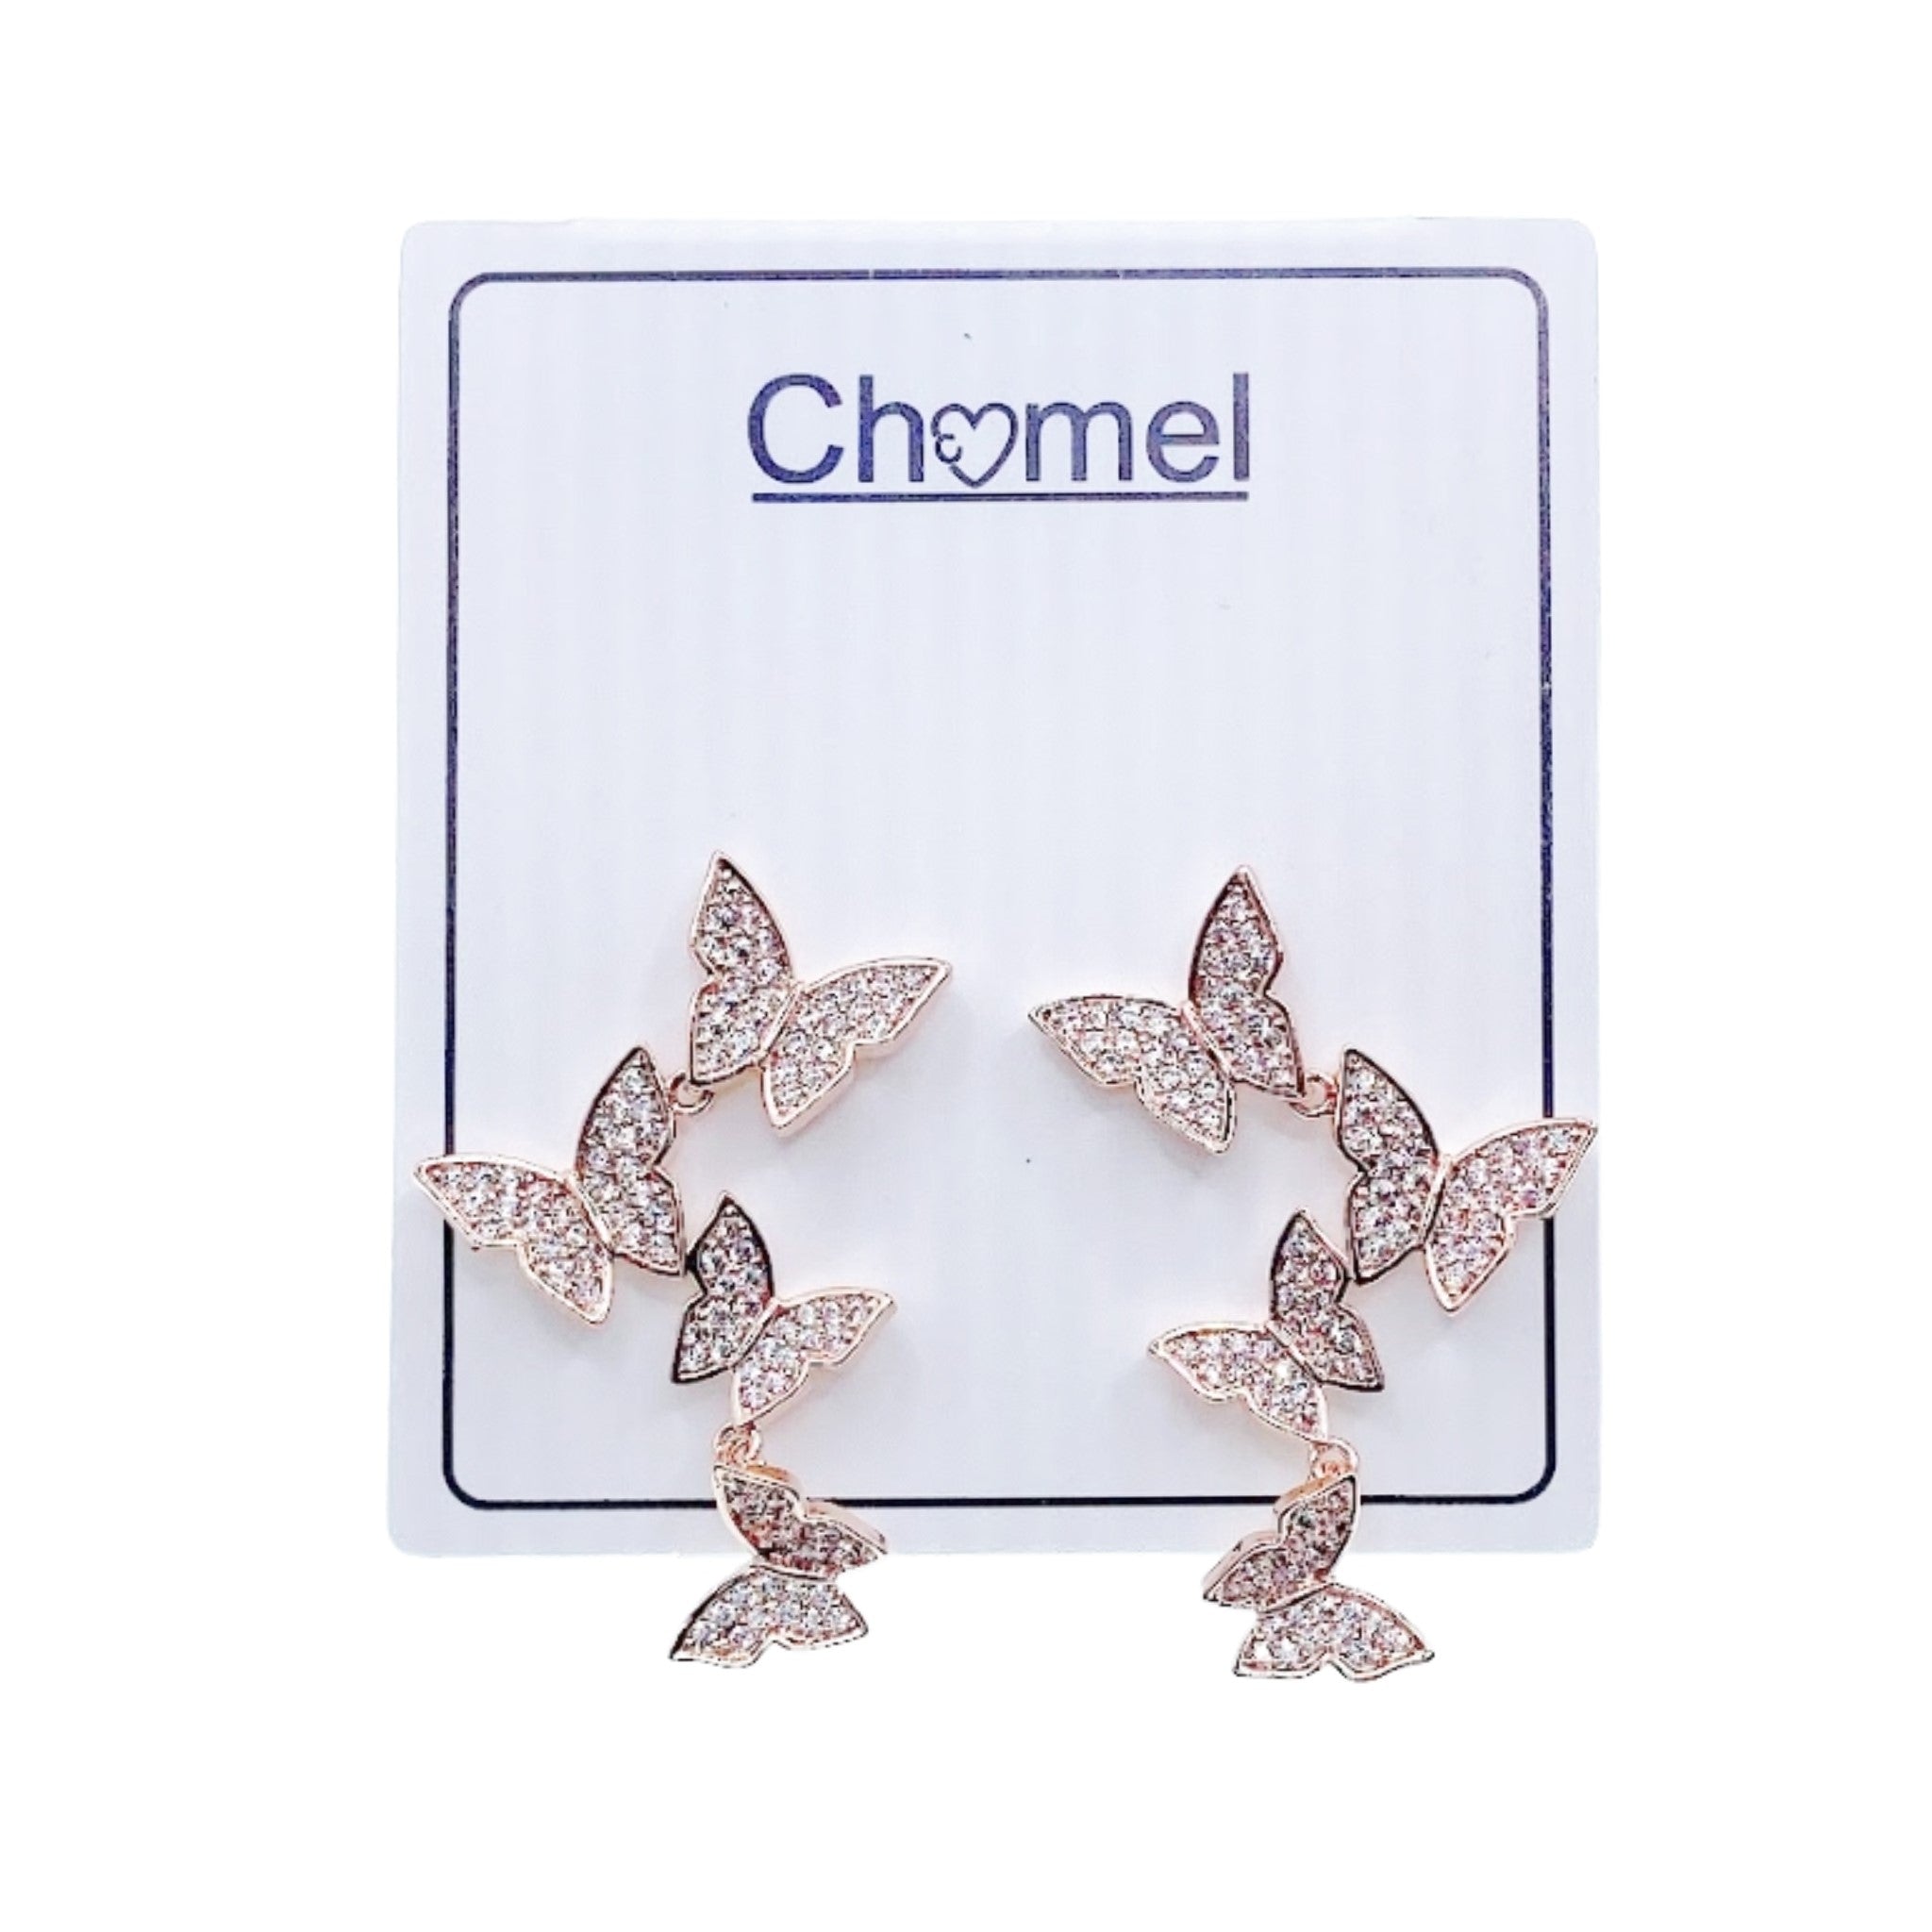 Butterfly Cubic Zirconia Earrings.